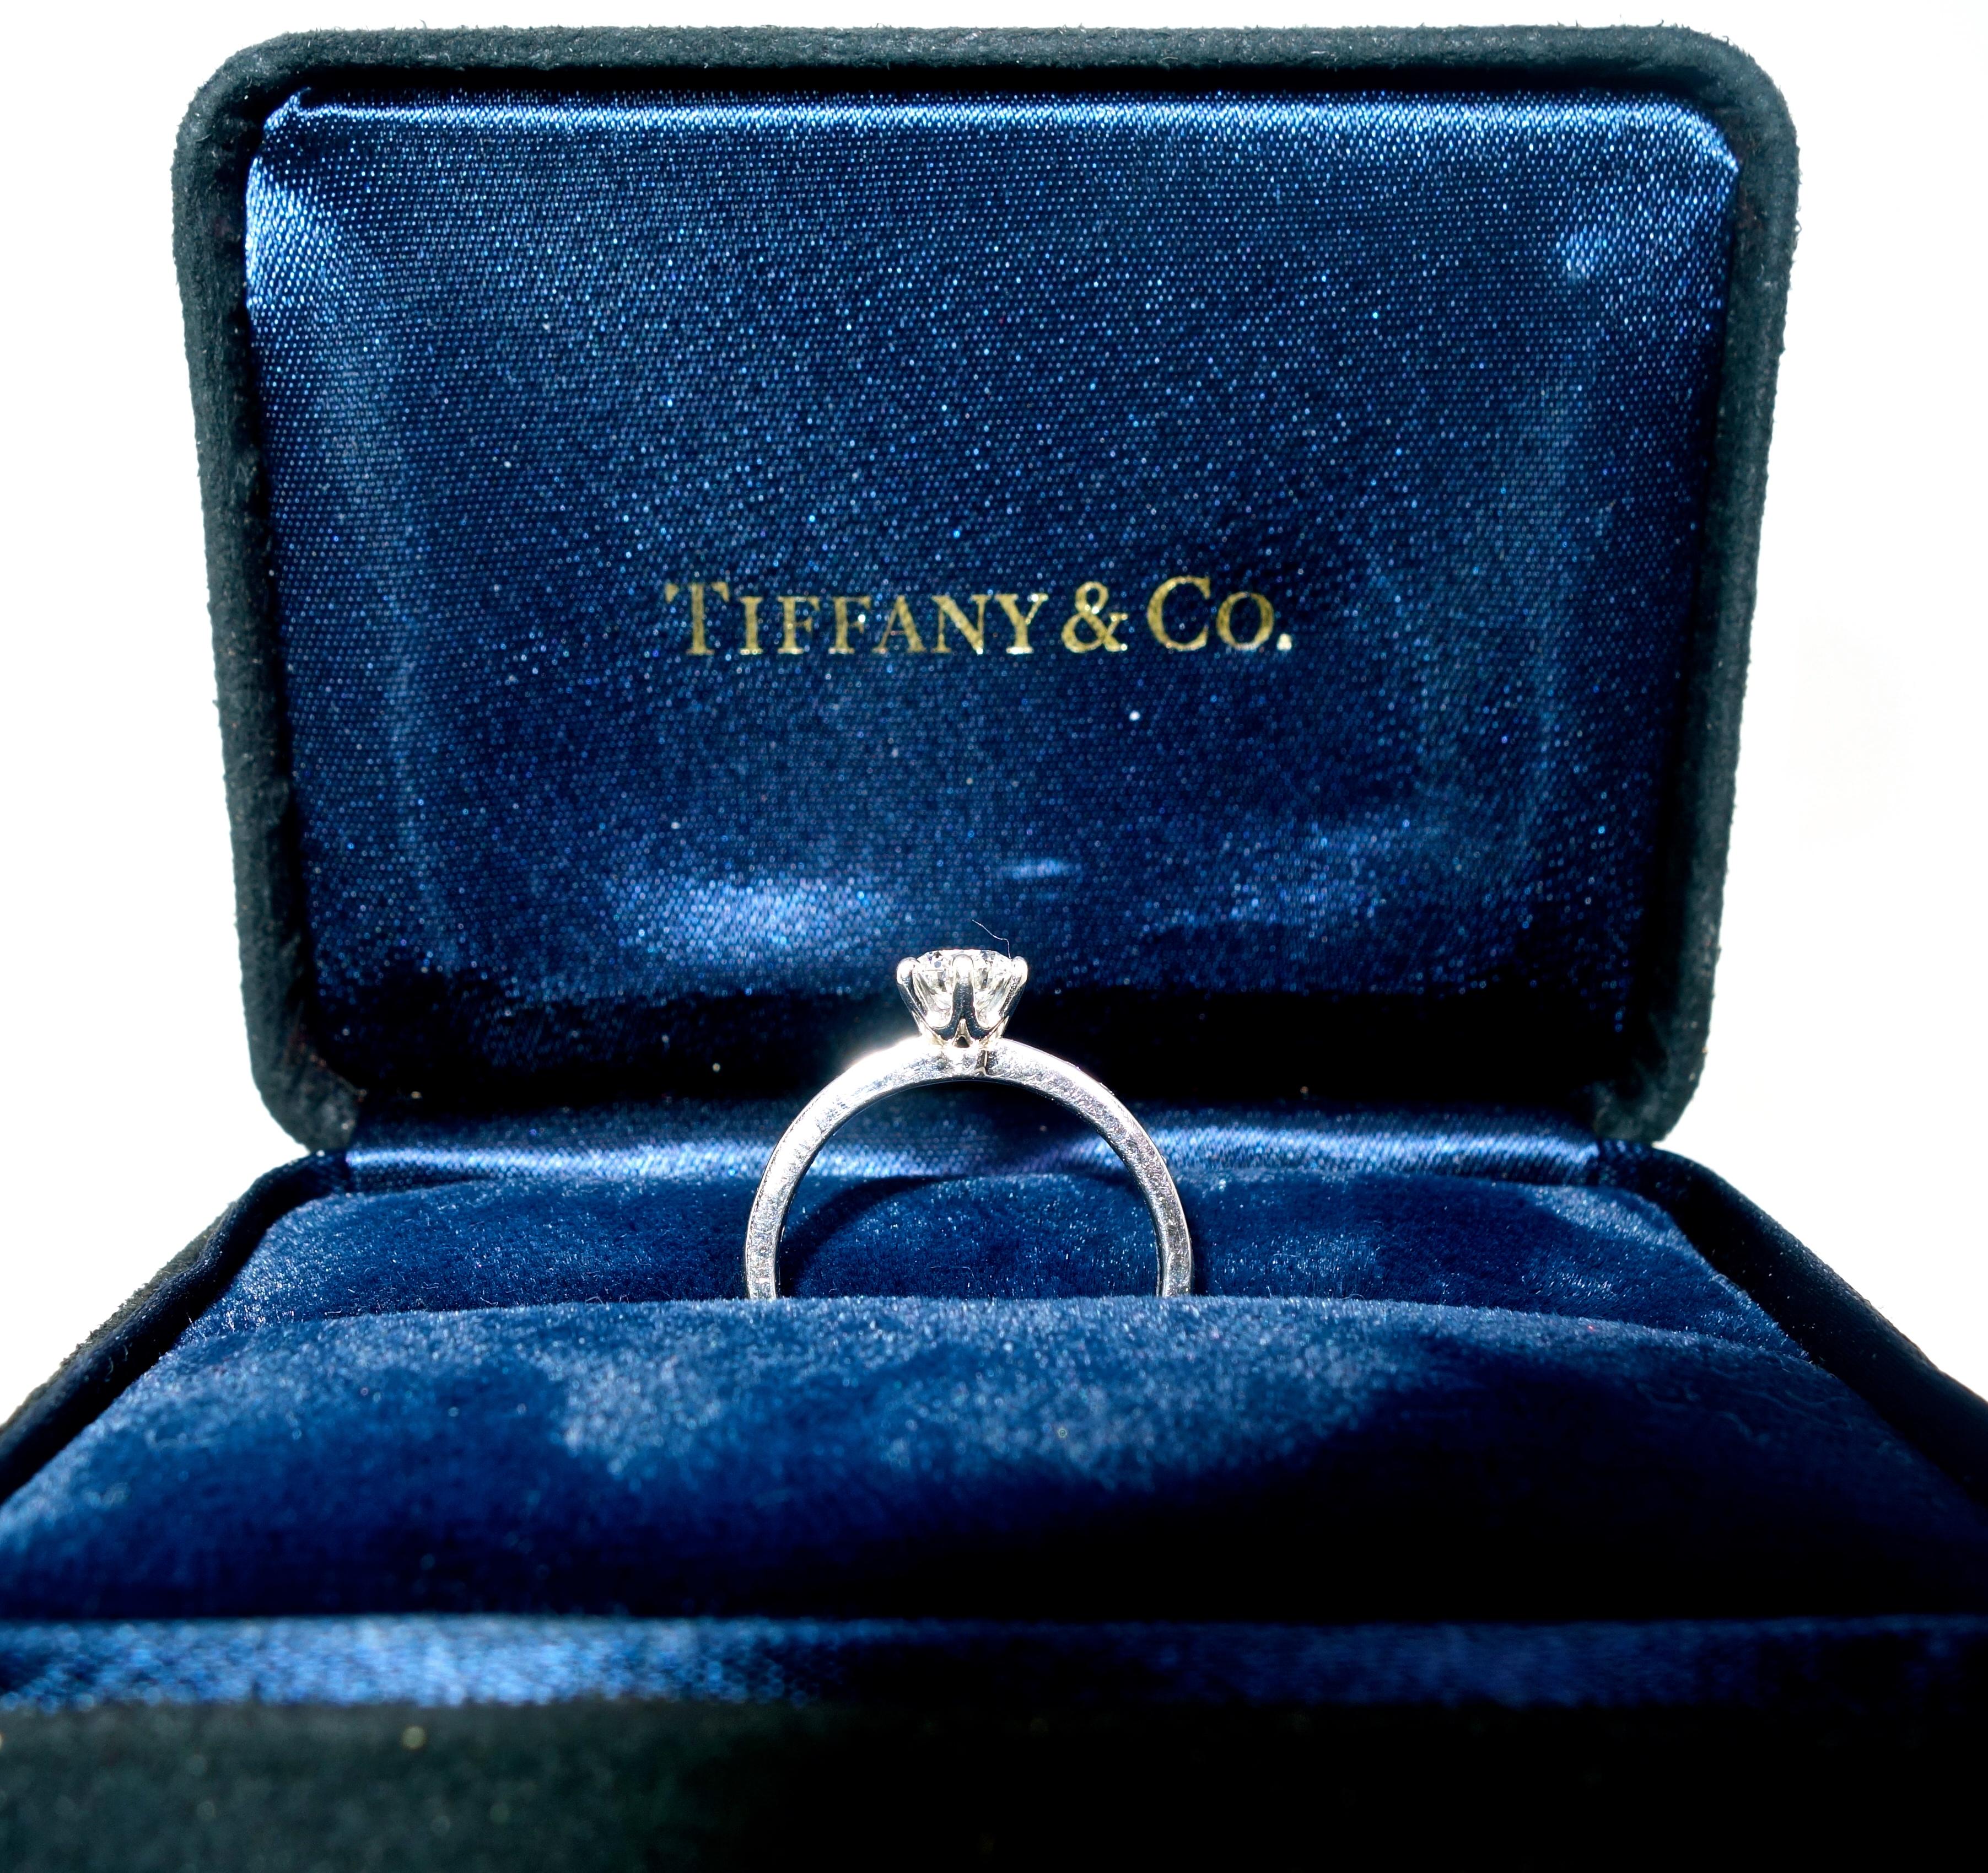 Tiffany & Co. Diamond, Certified Triple 